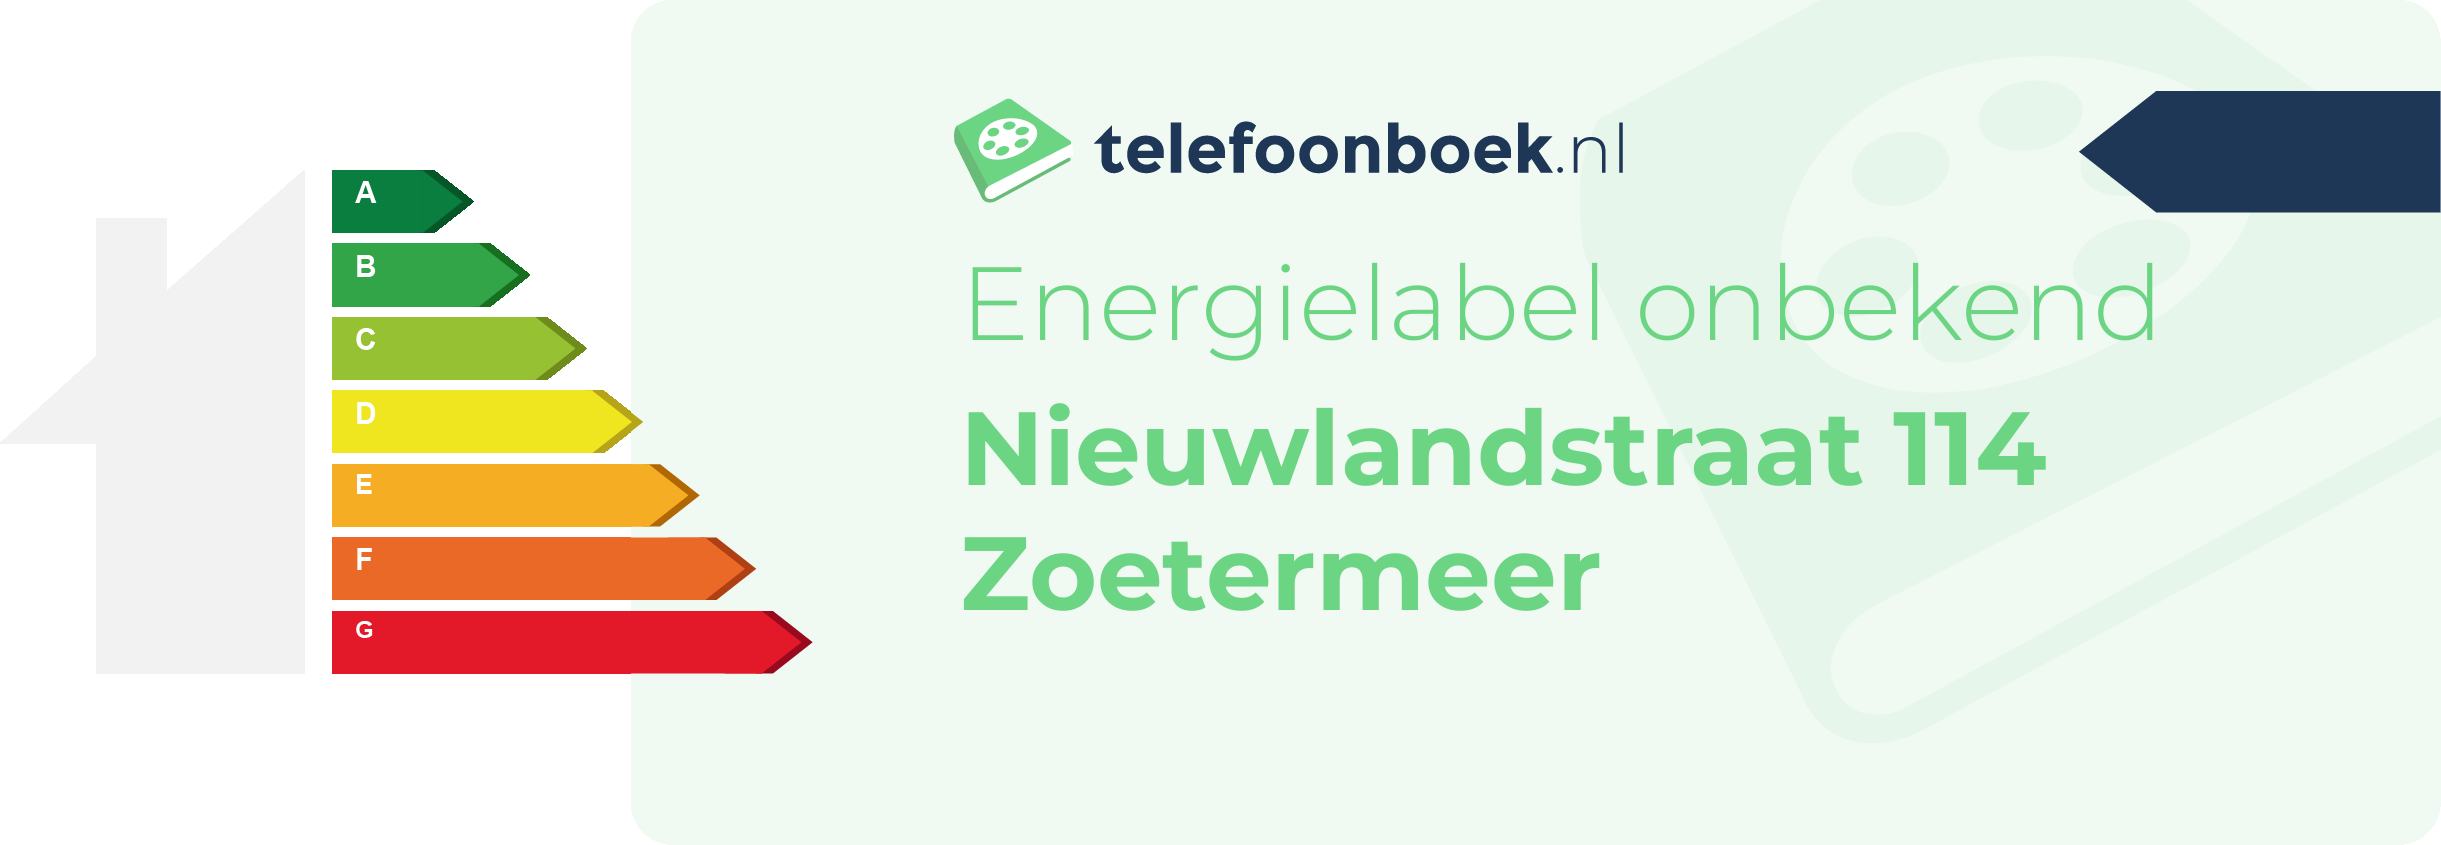 Energielabel Nieuwlandstraat 114 Zoetermeer